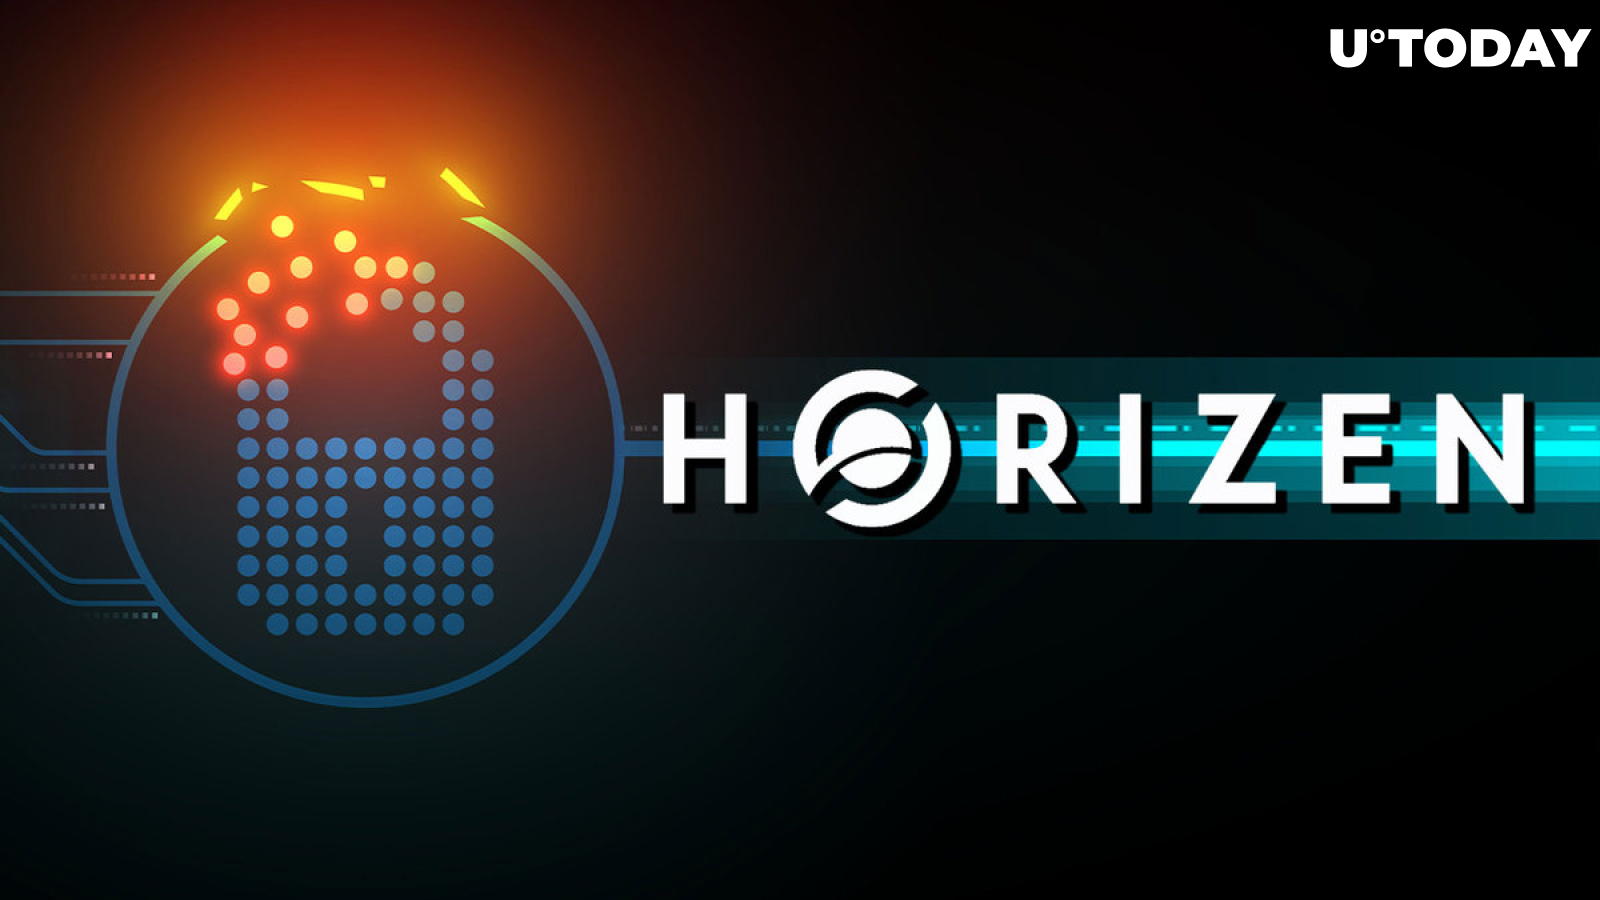 Horizen (ZEN) No Longer Privacy Coin